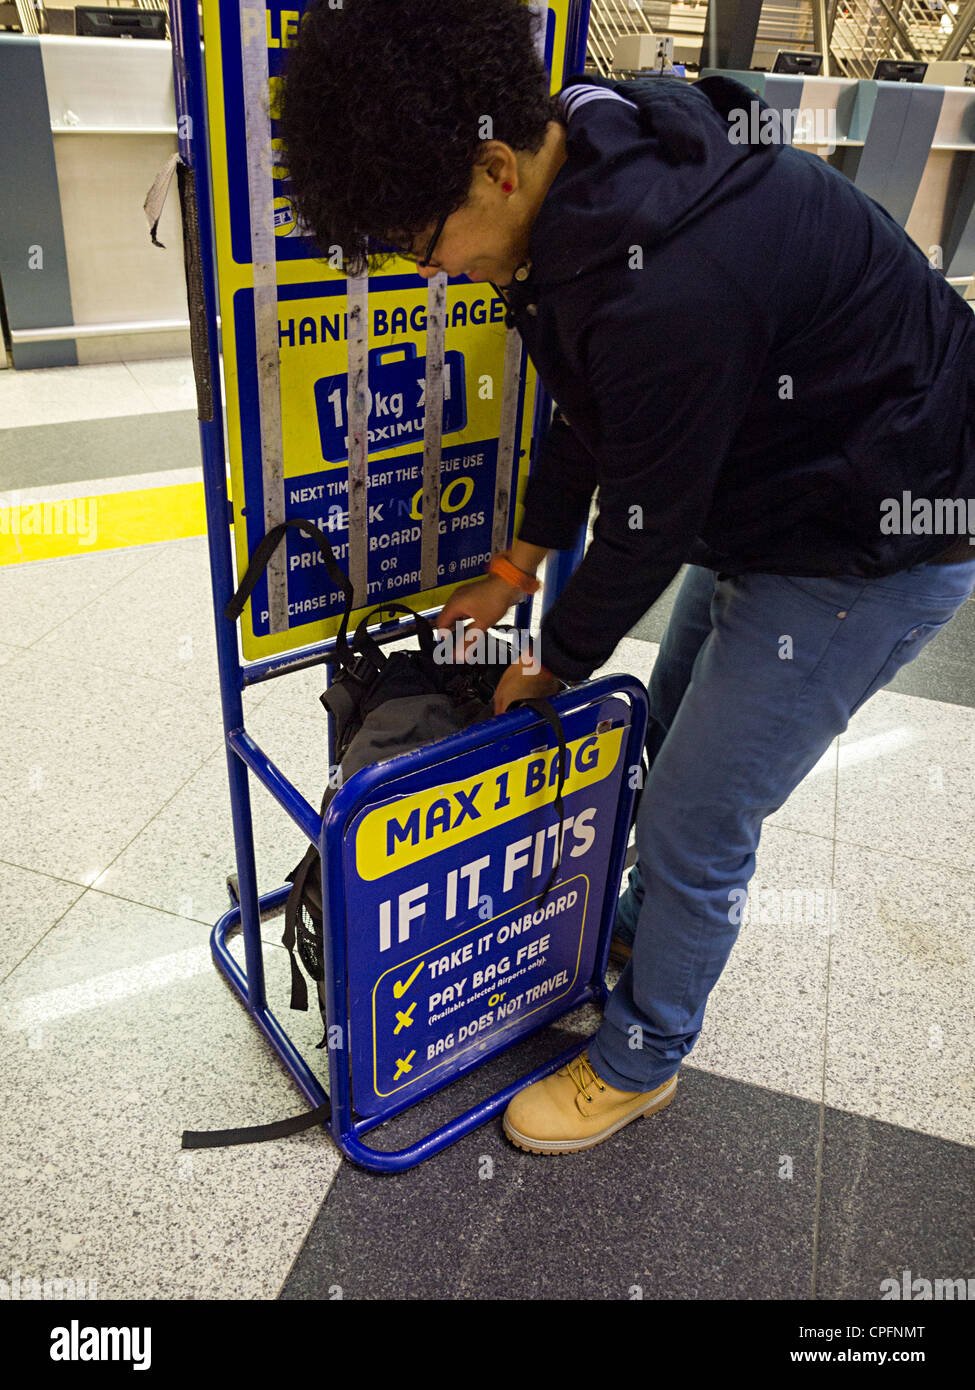 Person, die versucht, Rucksack in Ryanair Größenbeschränkung zu passen  Stockfotografie - Alamy